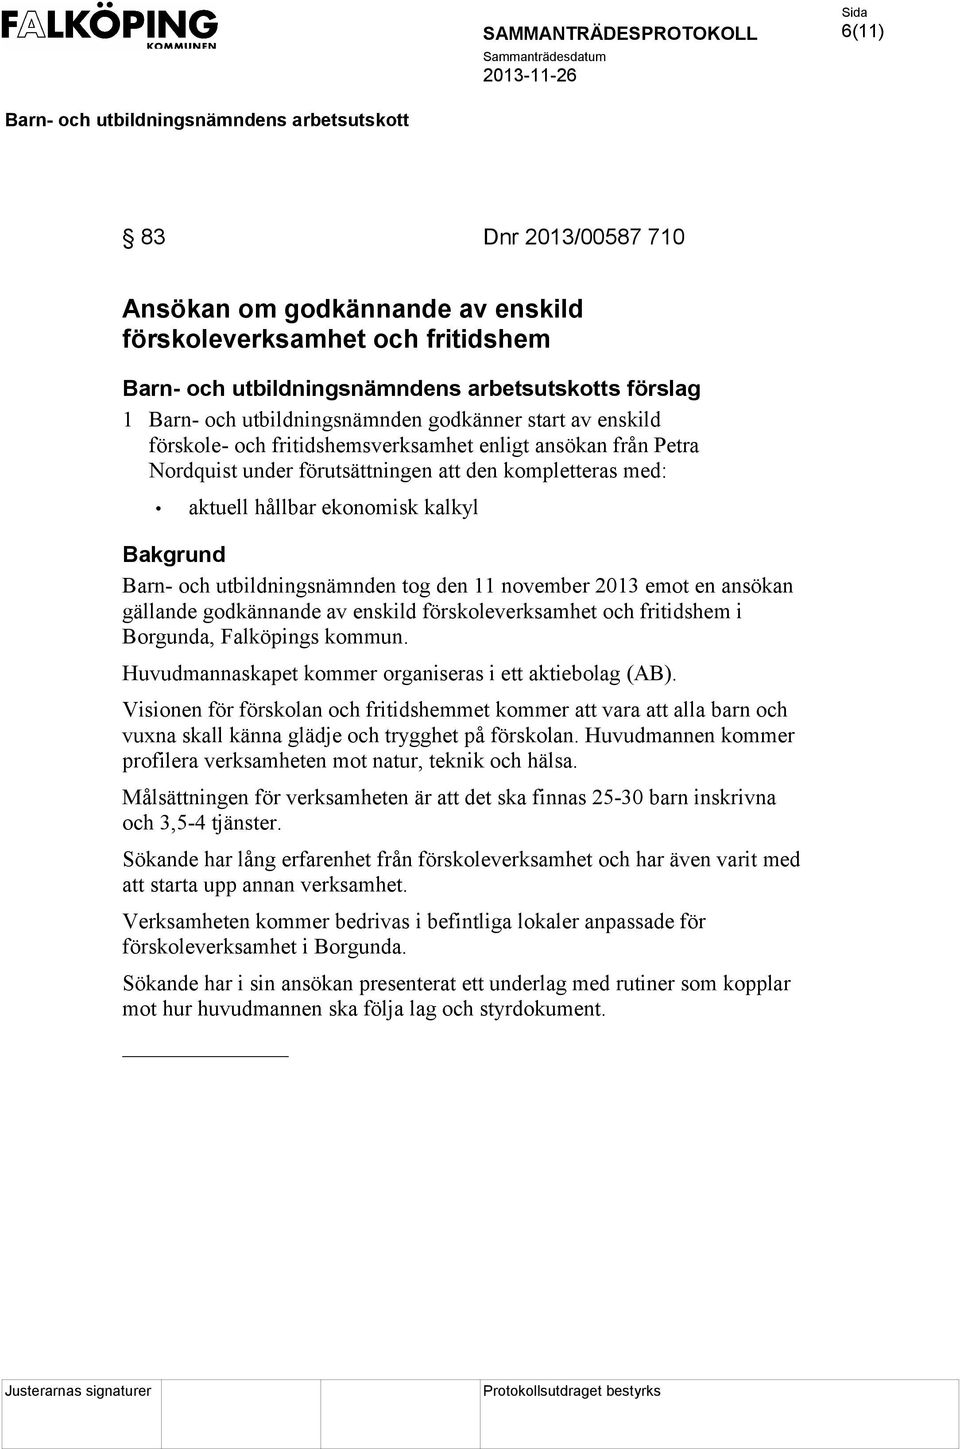 godkännande av enskild förskoleverksamhet och fritidshem i Borgunda, Falköpings kommun. Huvudmannaskapet kommer organiseras i ett aktiebolag (AB).